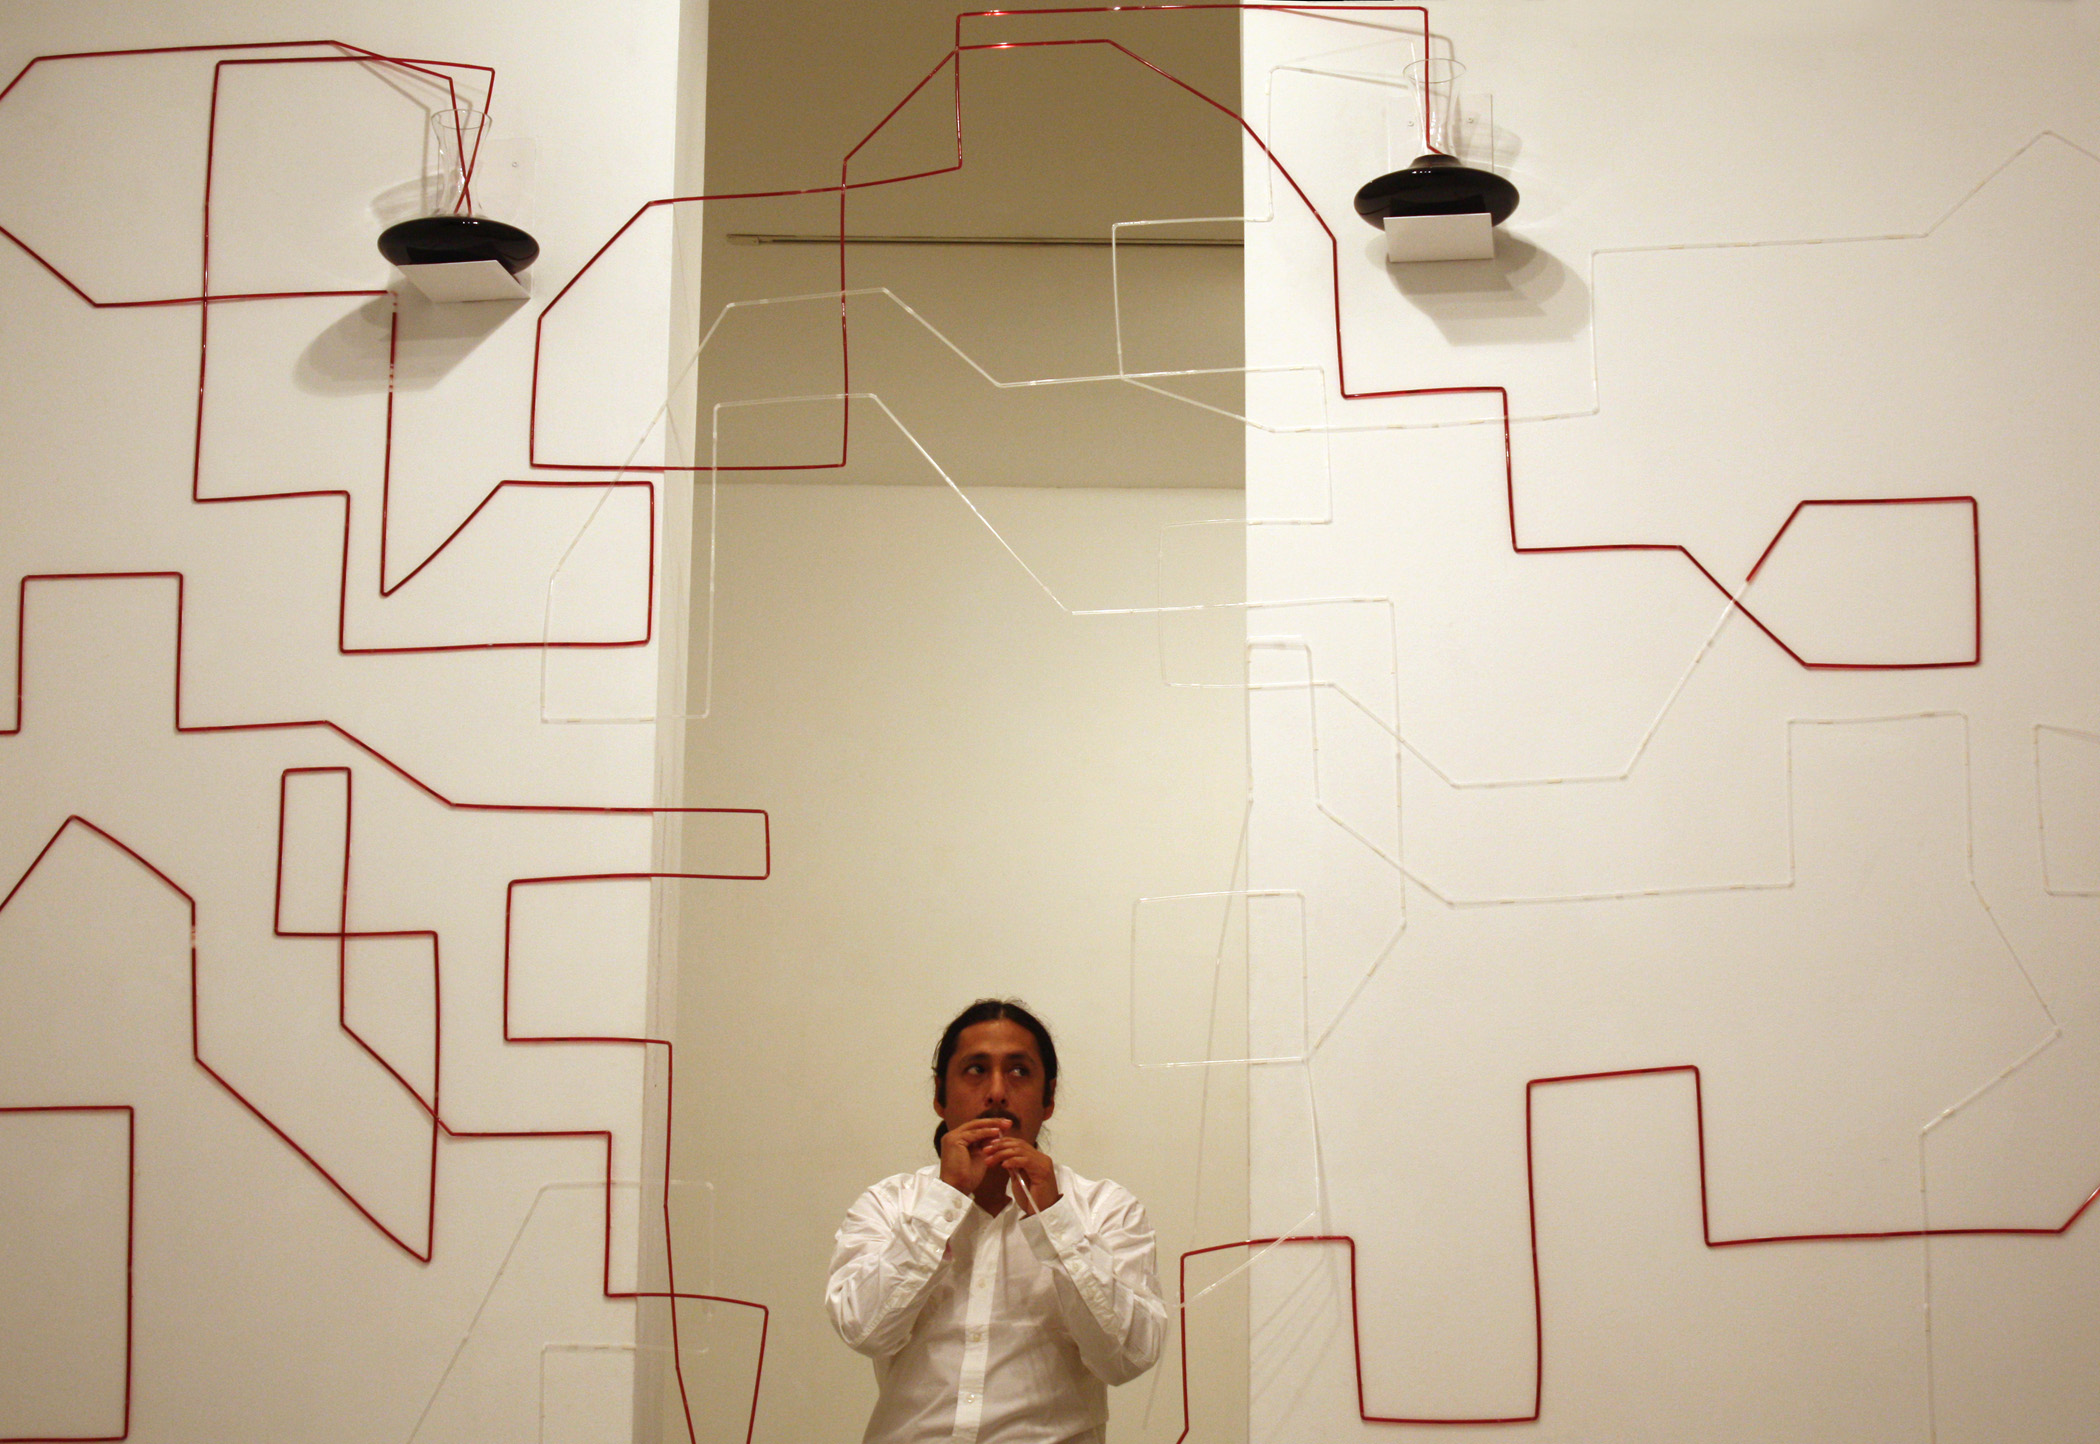 Performance Mapa Vascular en la Galería Maior de Palma, 2011